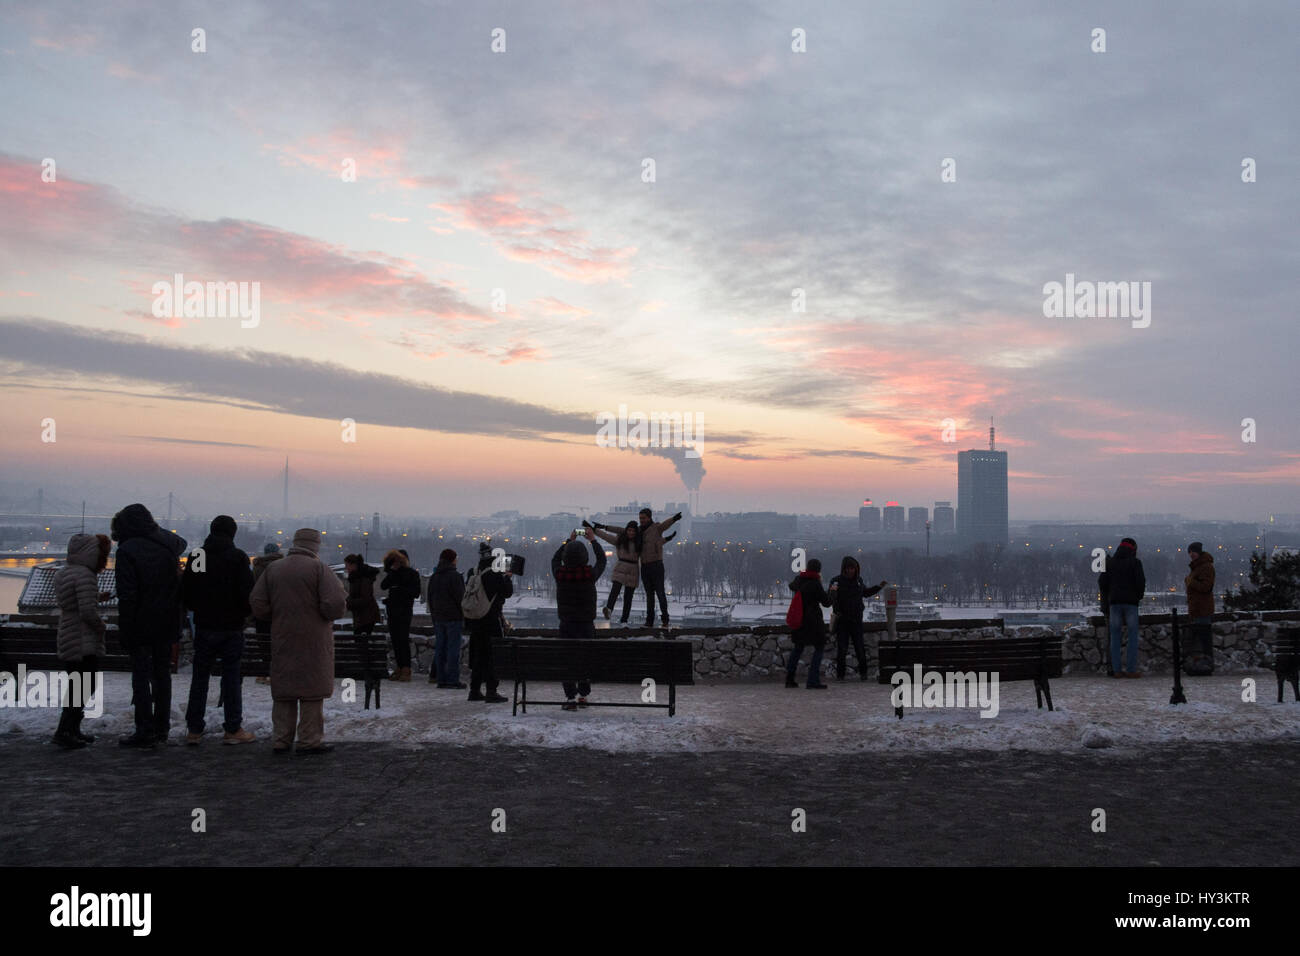 Belgrade, Serbie - 1 janvier 2015 : les gens prennent des photos de la nouvelle belgrade (Beograd) à partir de la forteresse de Kalemegdan silhouette de personnes prenant des photos Banque D'Images